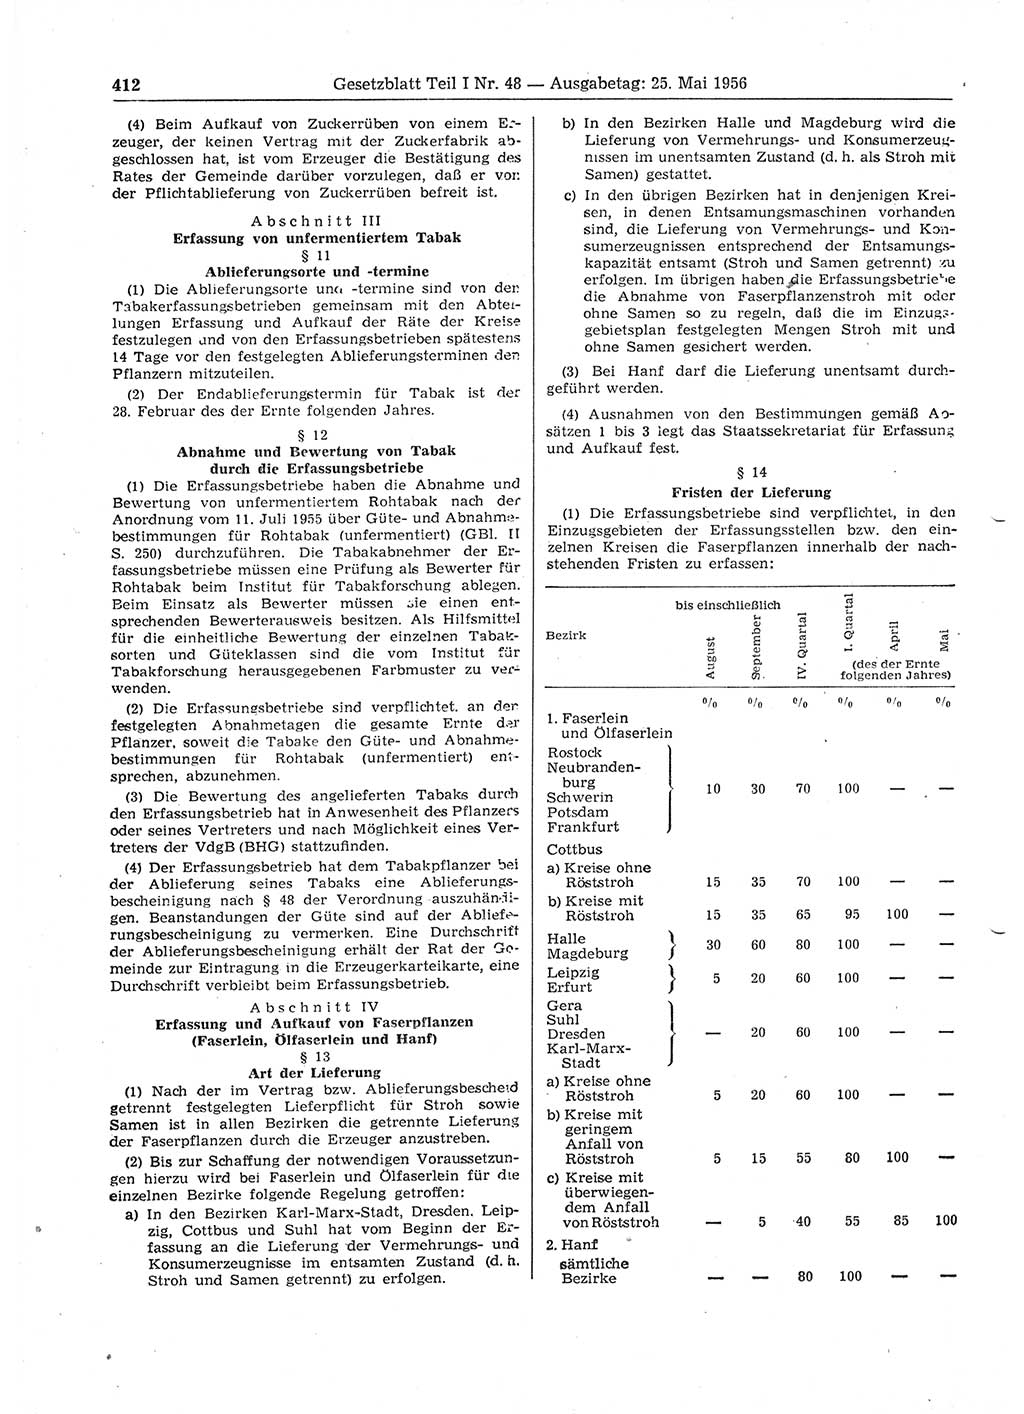 Gesetzblatt (GBl.) der Deutschen Demokratischen Republik (DDR) Teil Ⅰ 1956, Seite 412 (GBl. DDR Ⅰ 1956, S. 412)